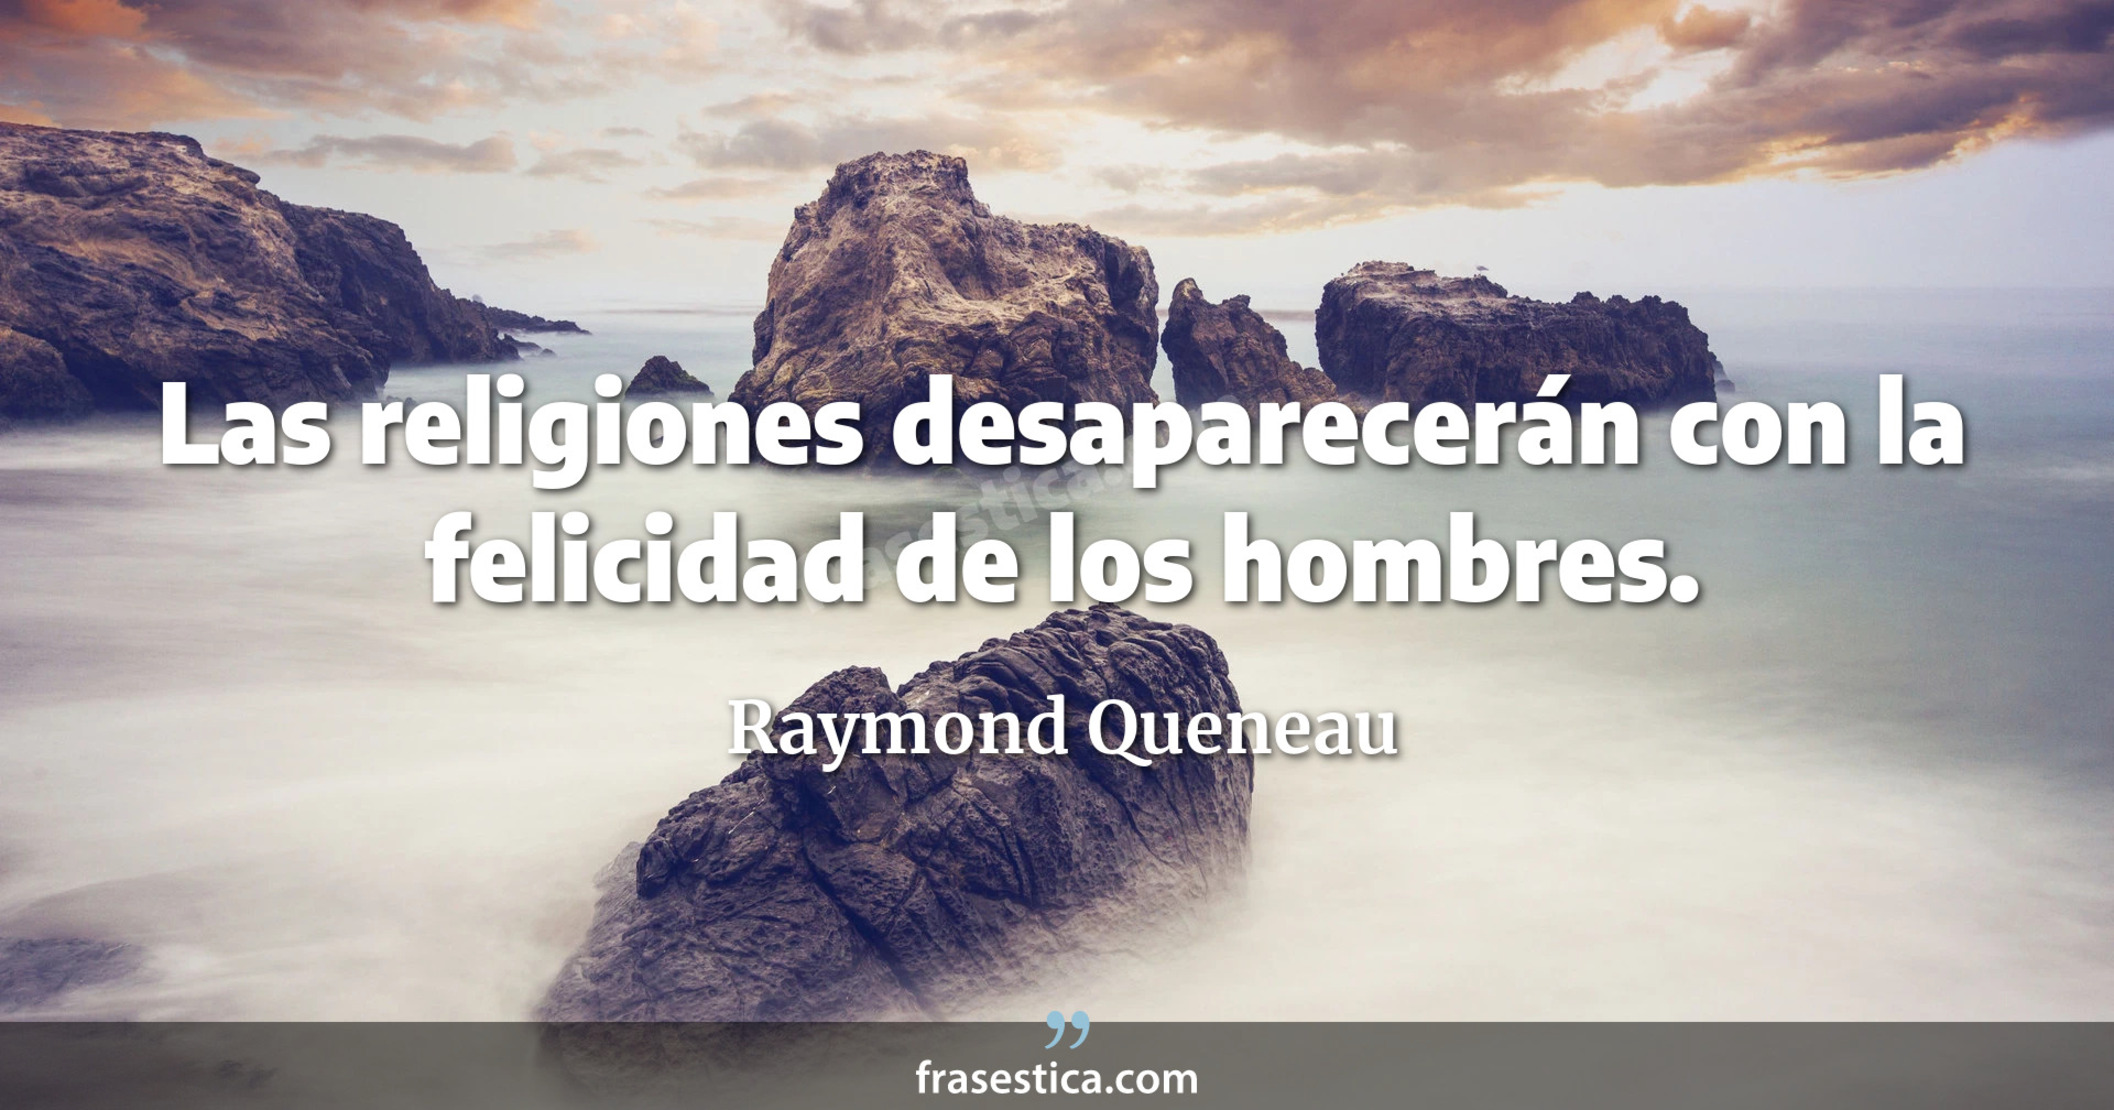 Las religiones desaparecerán con la felicidad de los hombres. - Raymond Queneau